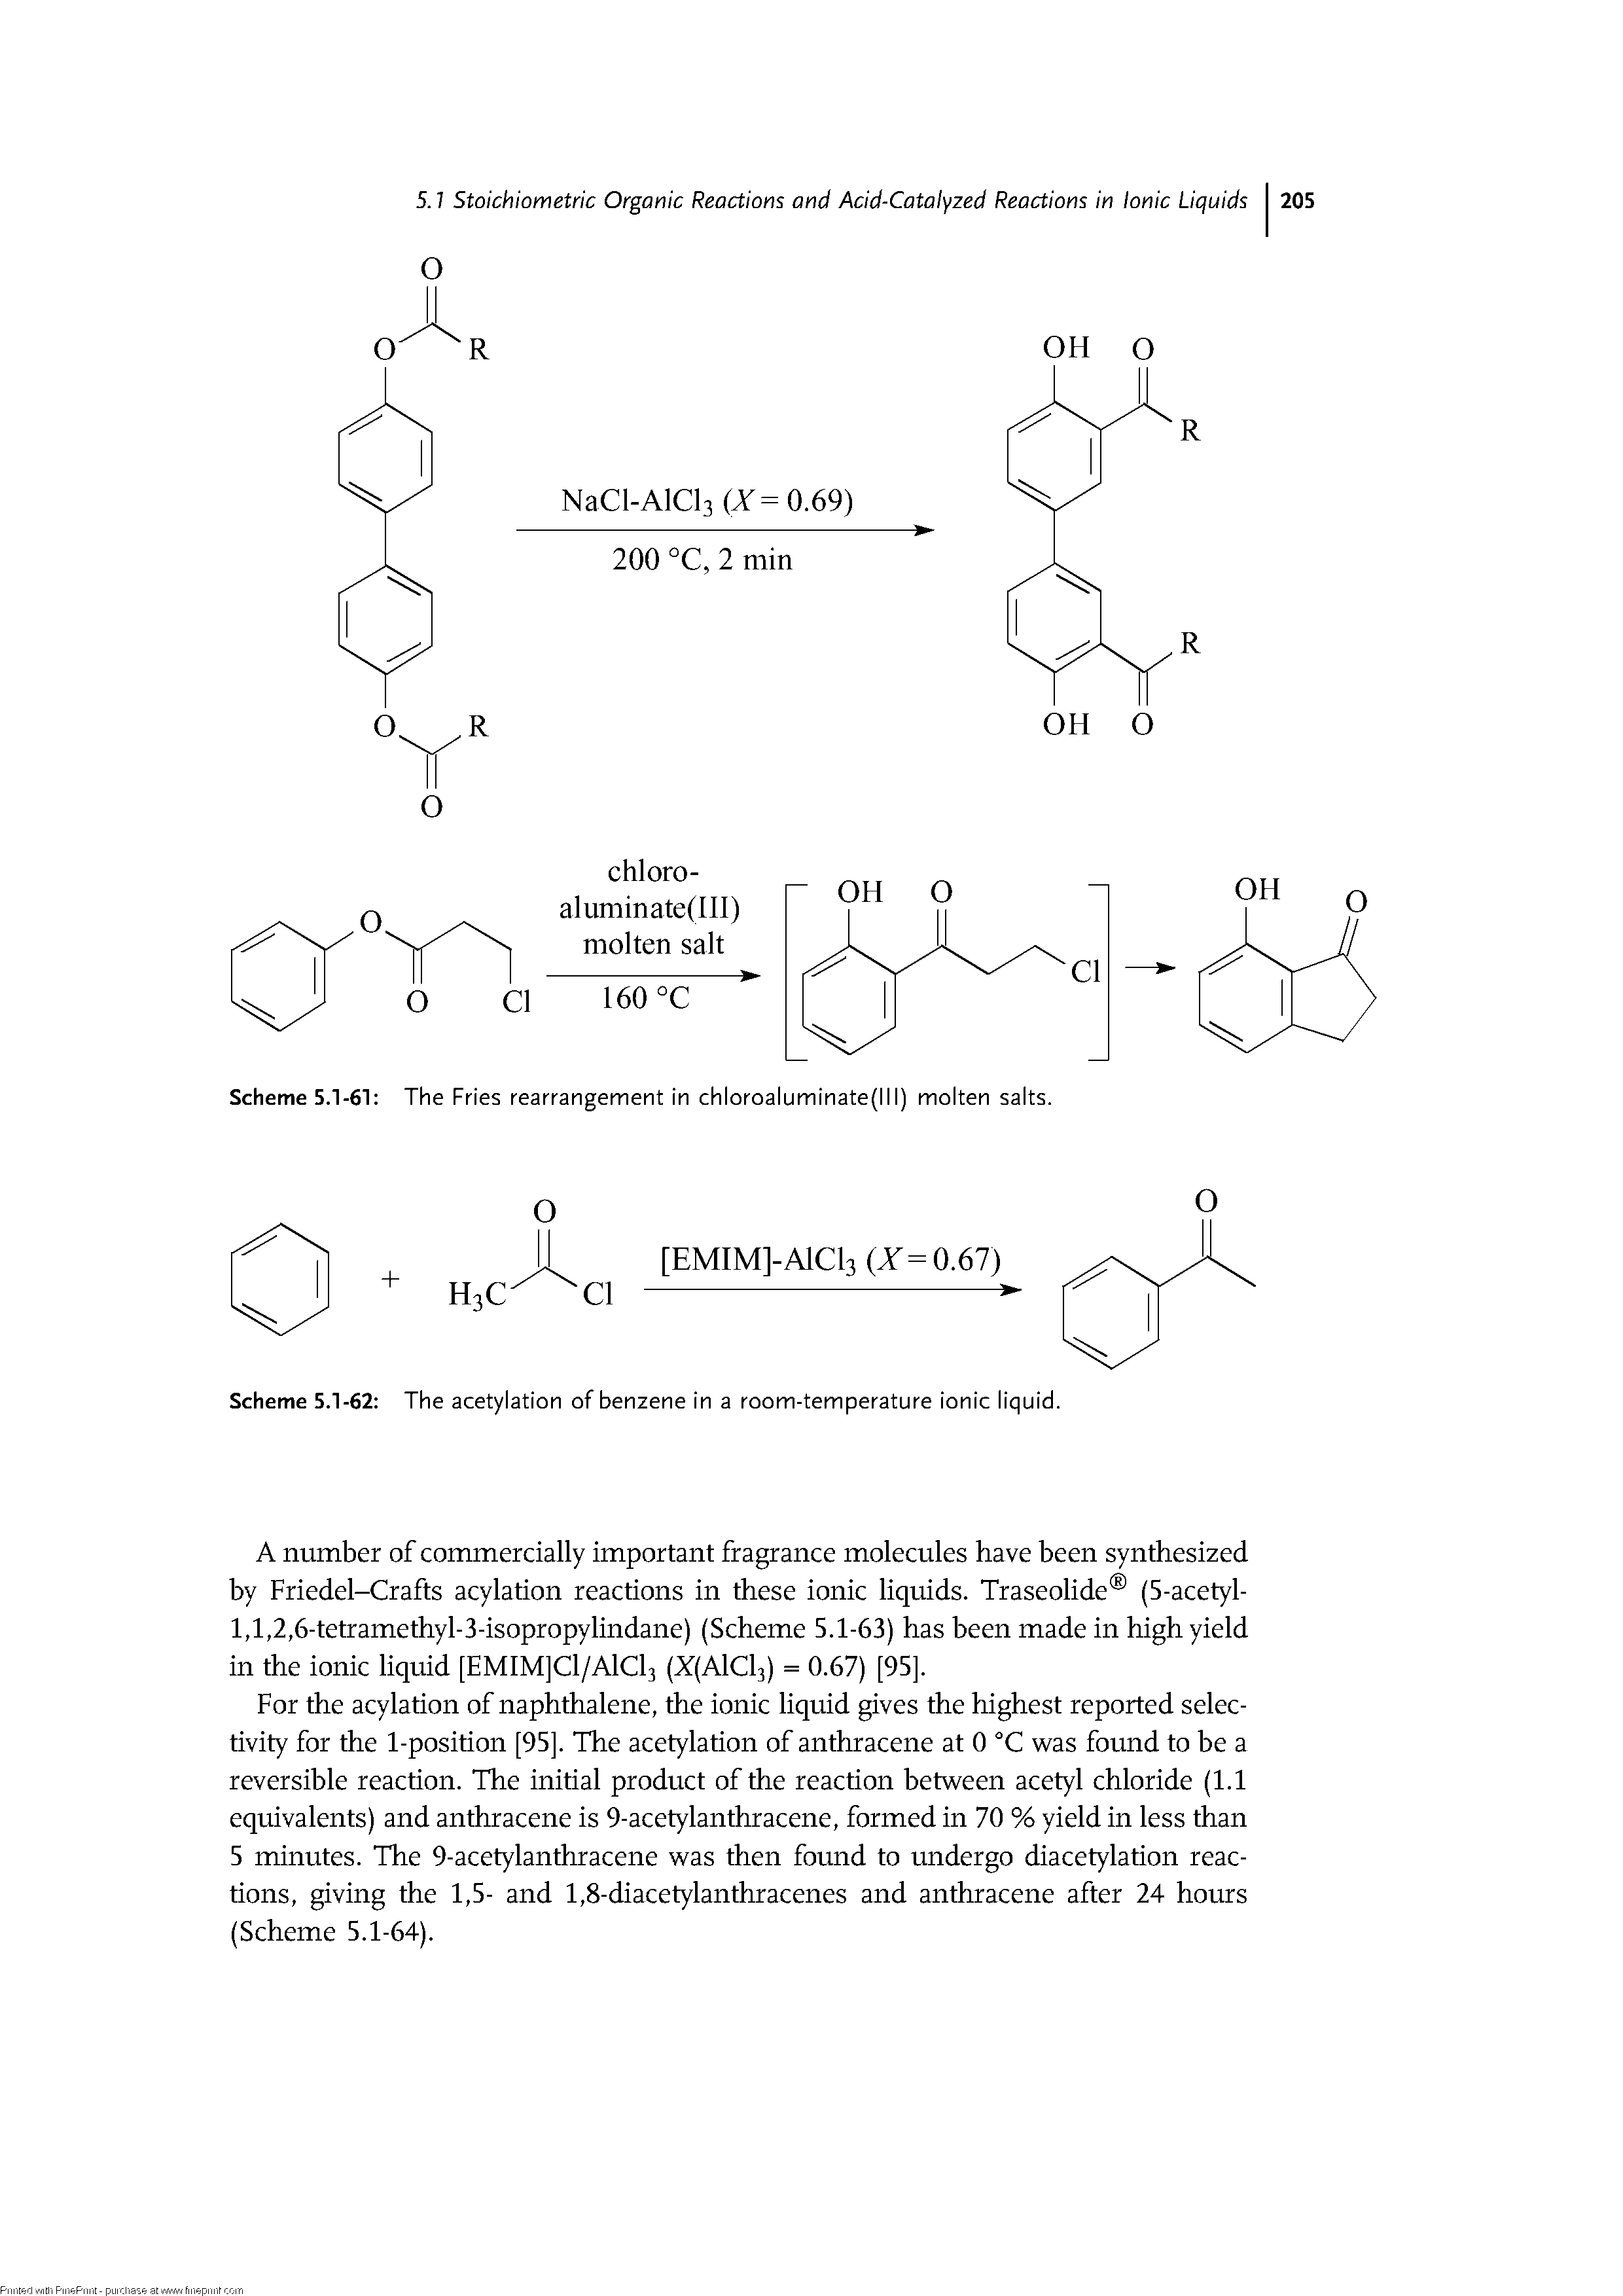 Scheme 5.1-61 The Fries rearrangement in chloroaluminate(lll) molten salts.